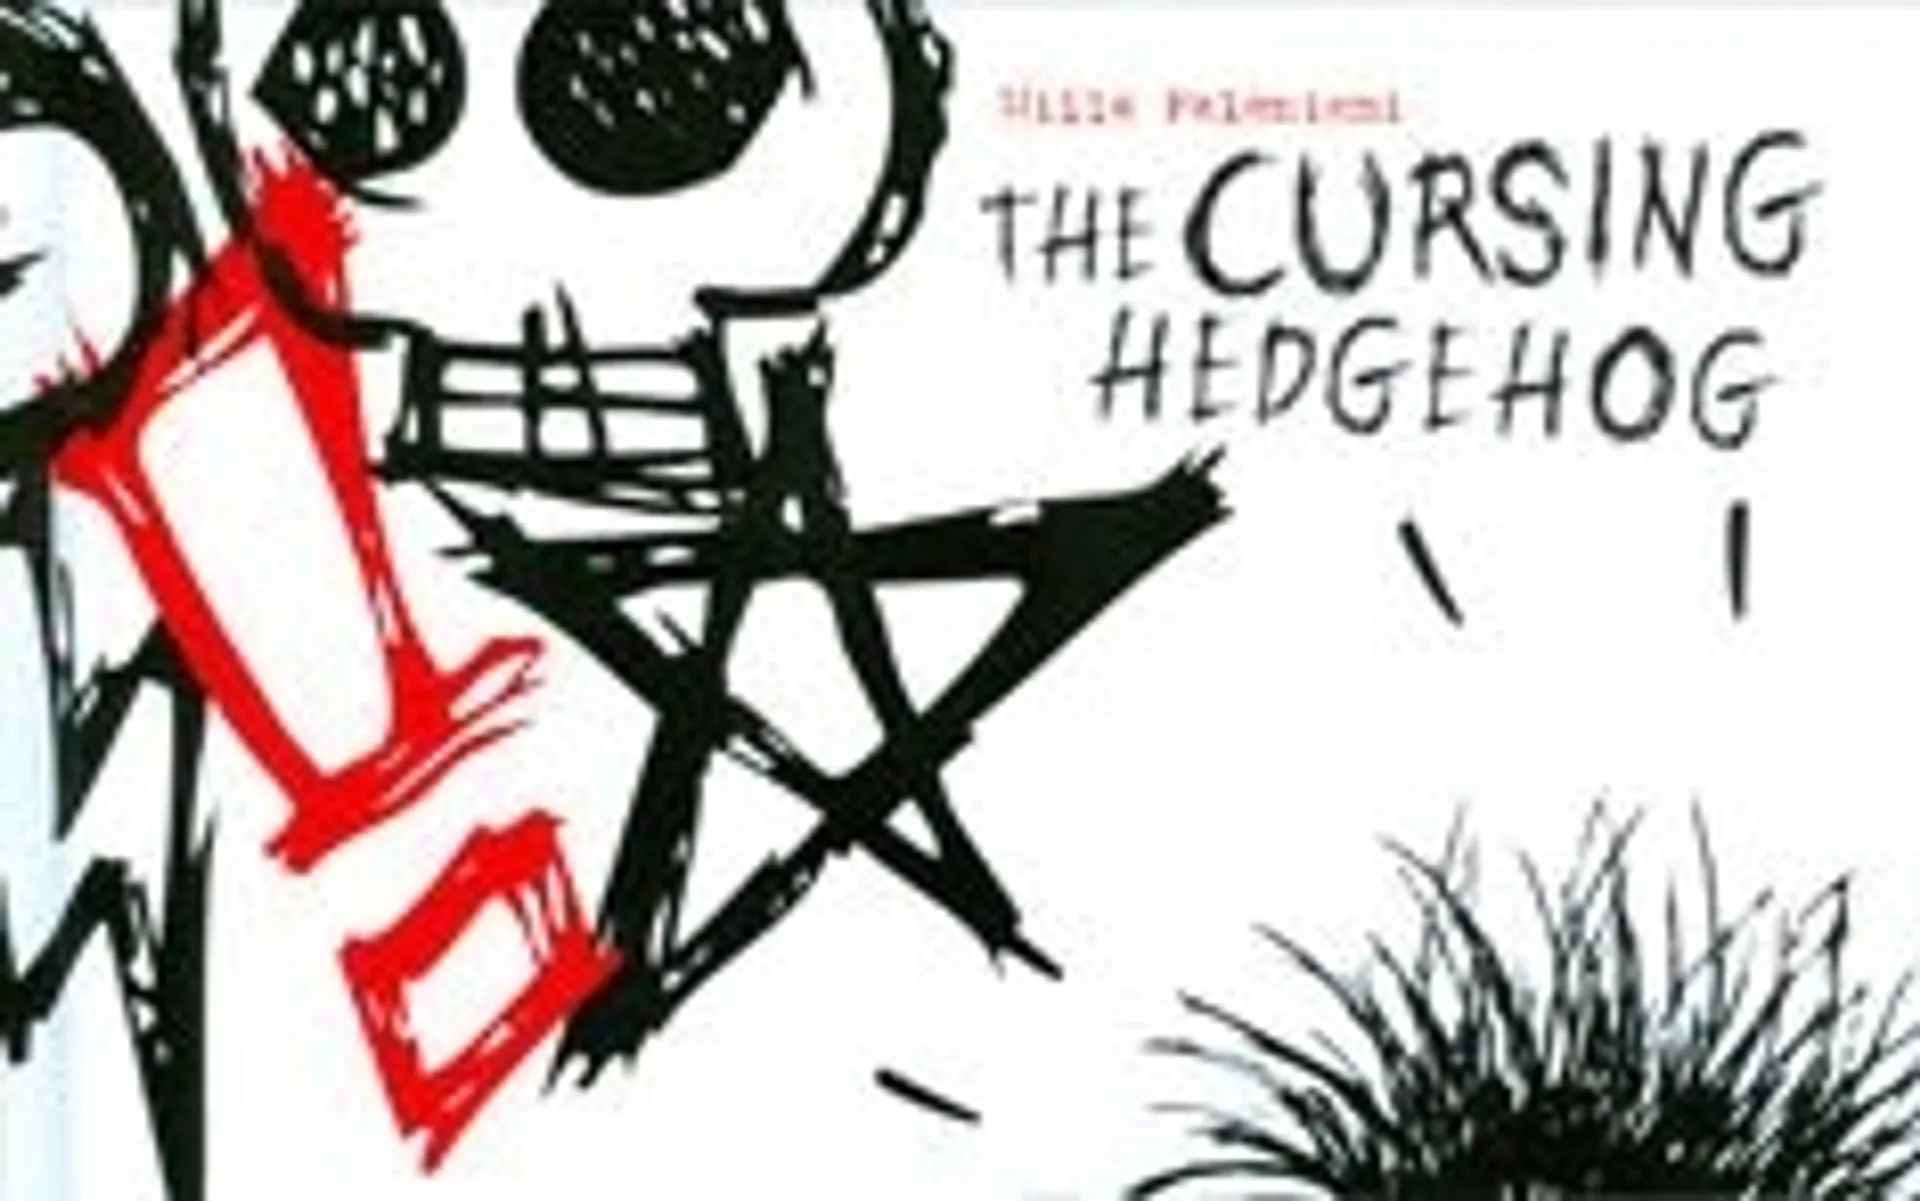 The Cursing Hedgehog